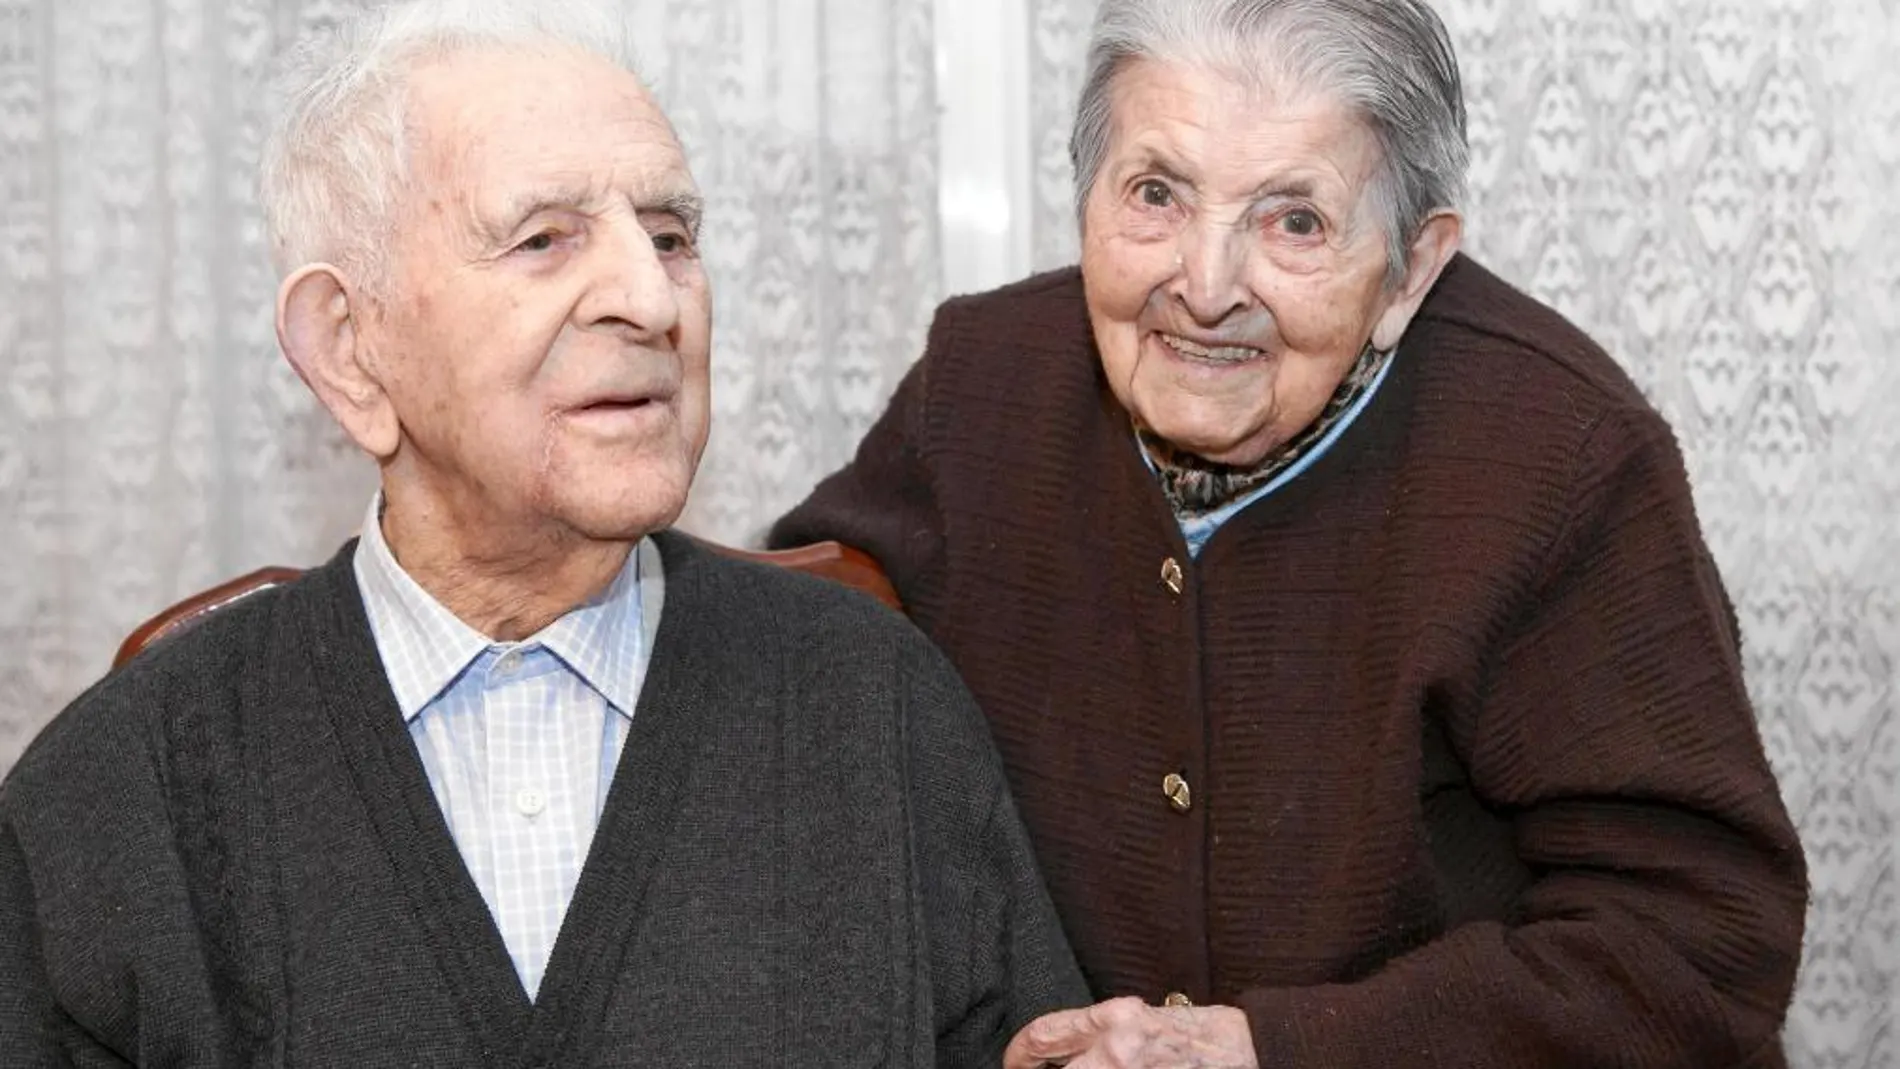 El matrimonio de centenarios, Tasio y Natividad, en su casa de Soria